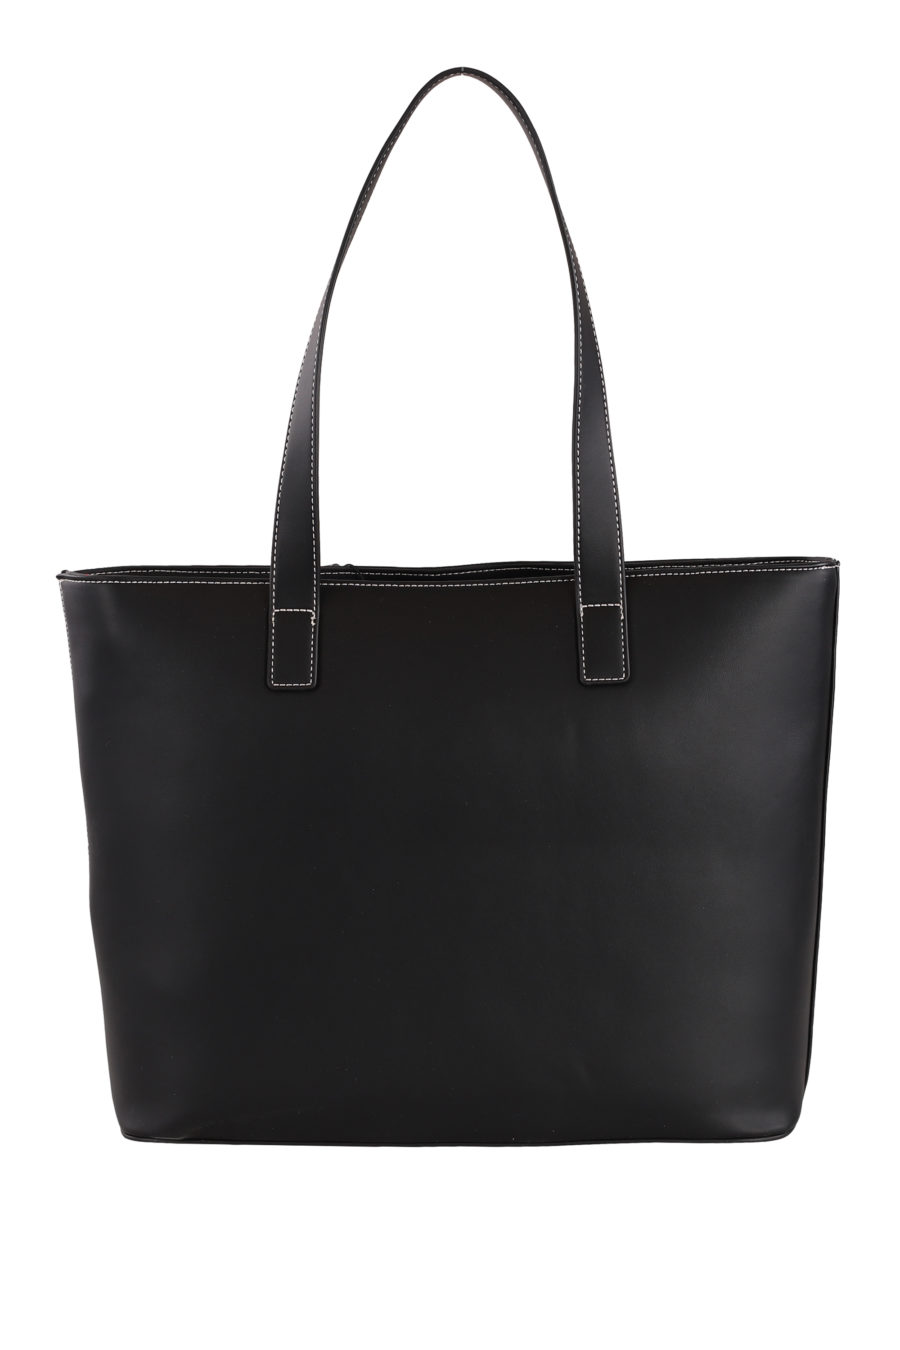 Schwarze Shopper-Tasche mit Reißverschluss - IMG 0352